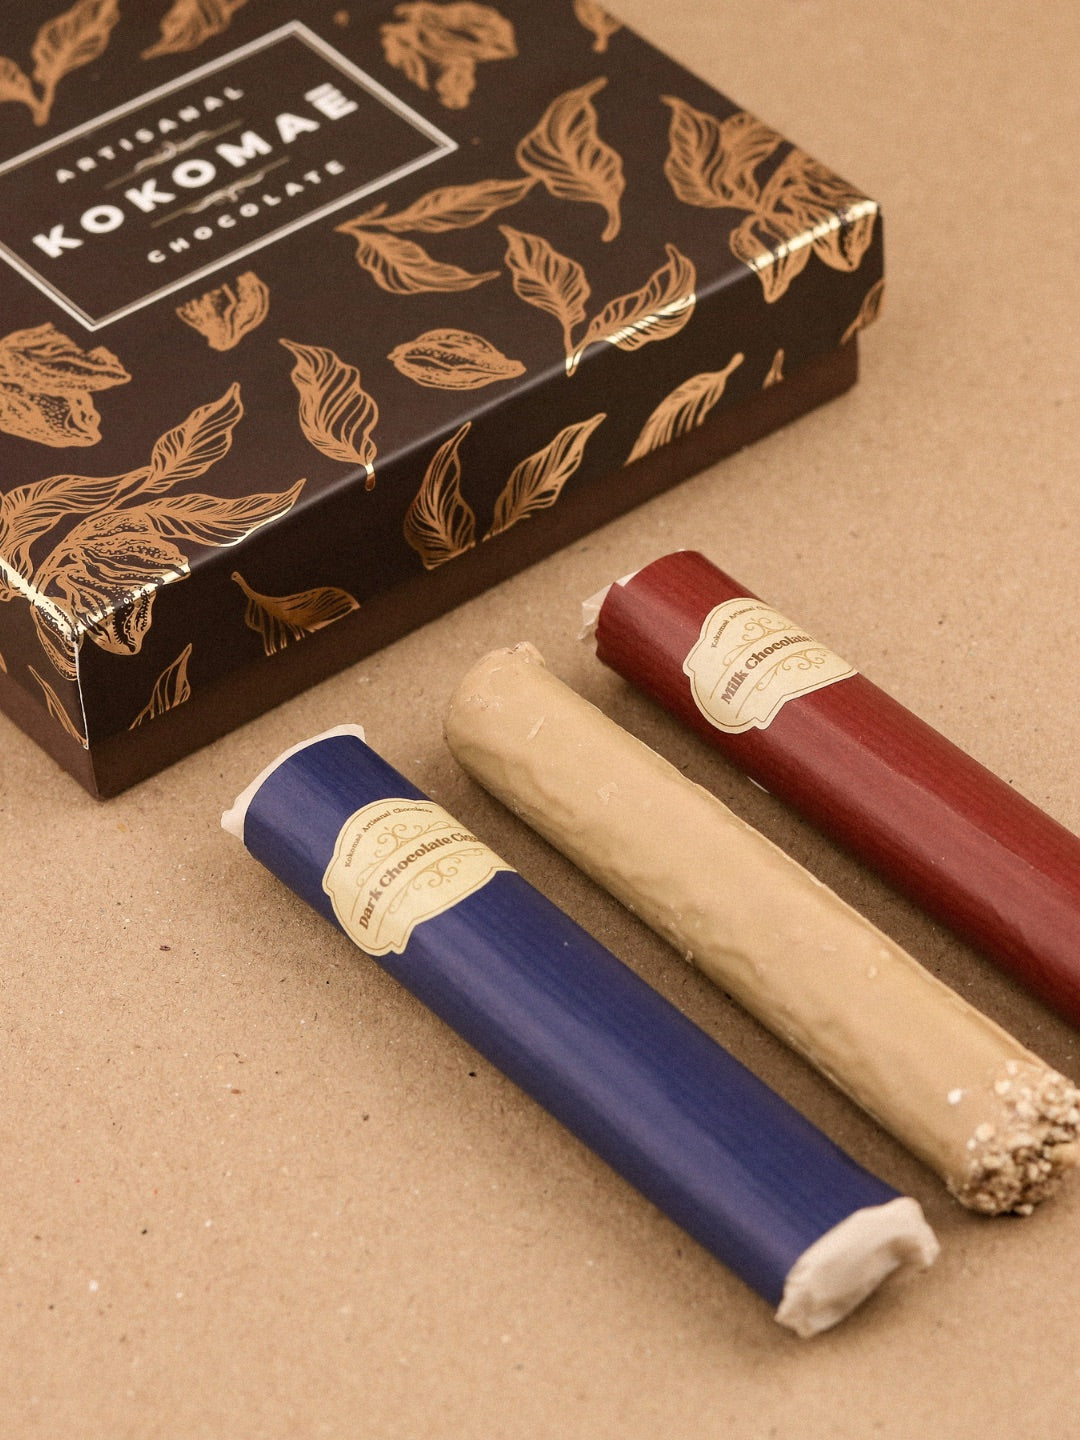 Kokomaē Luxurious Trio of Dark, Milk, and White Chocolate Cigars - Coming Soon